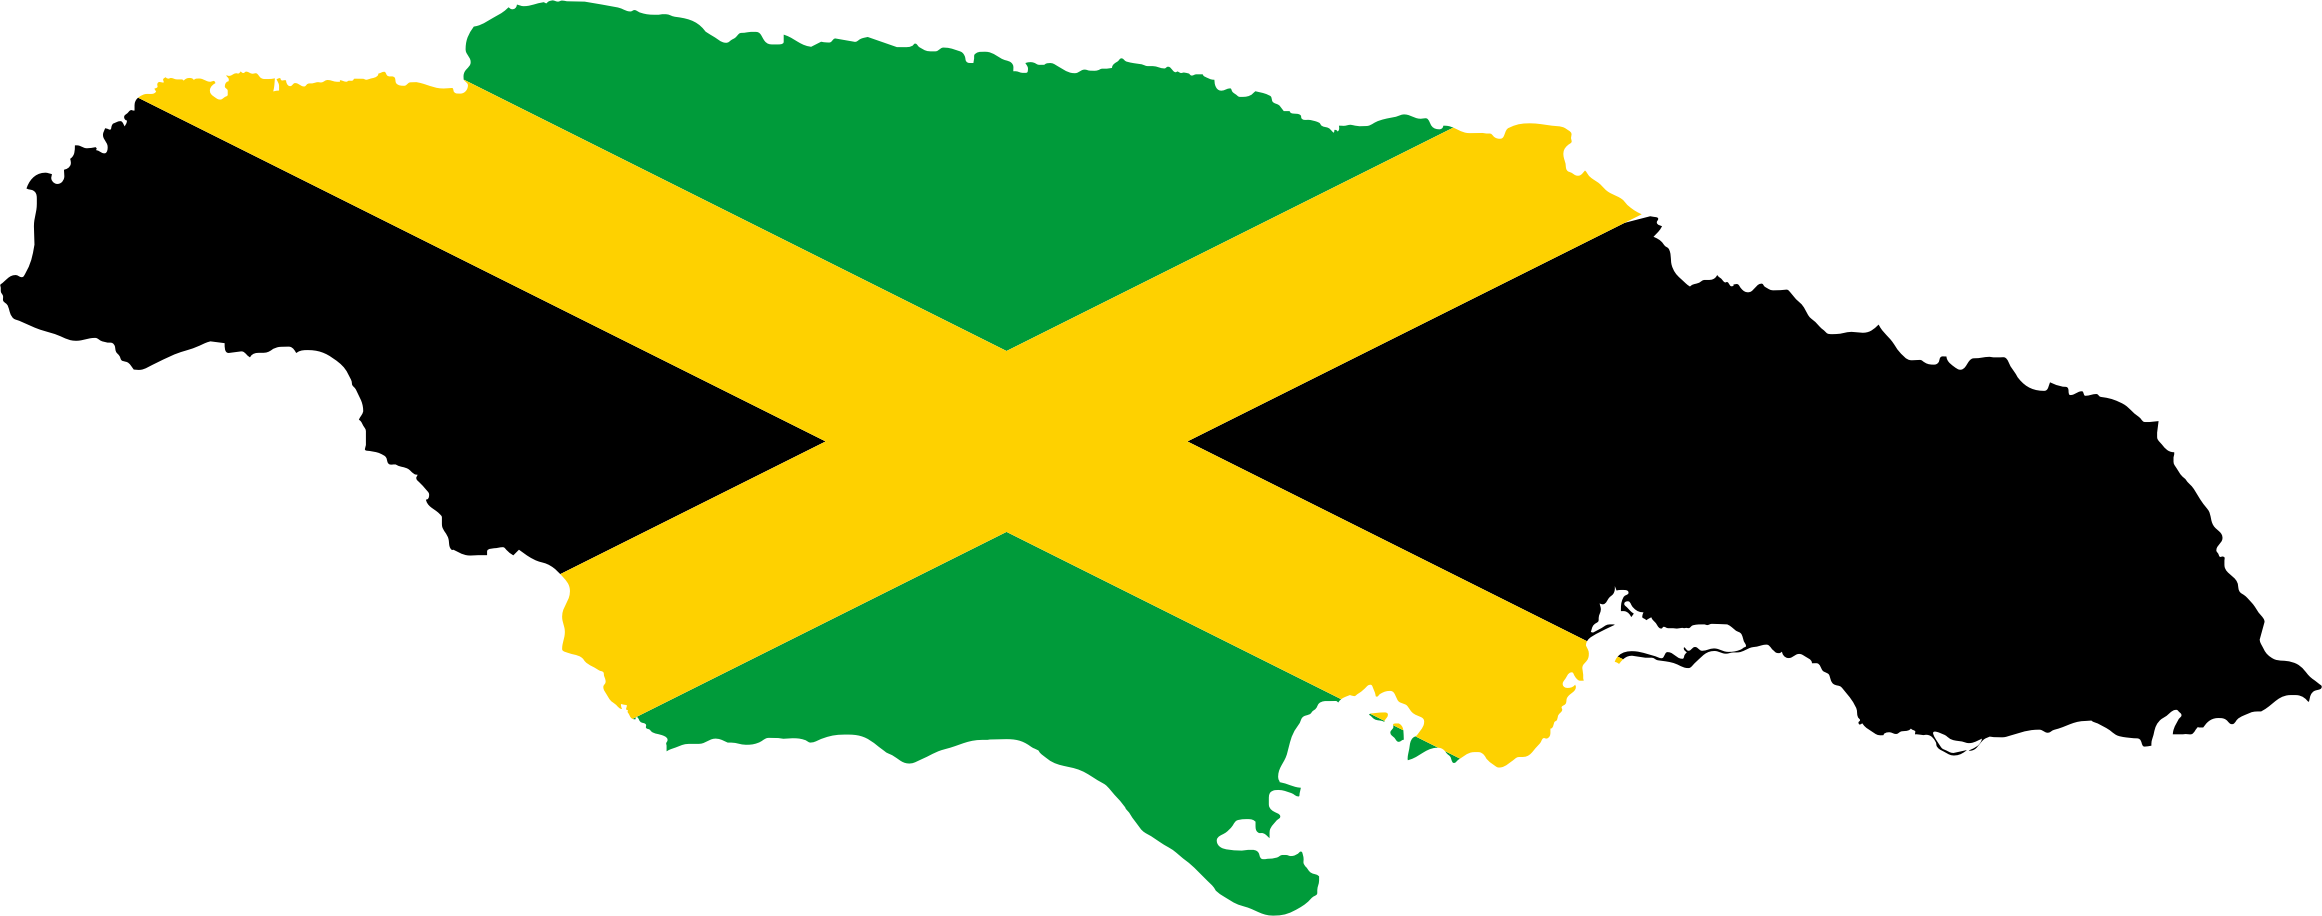 Jamaica Clipart.